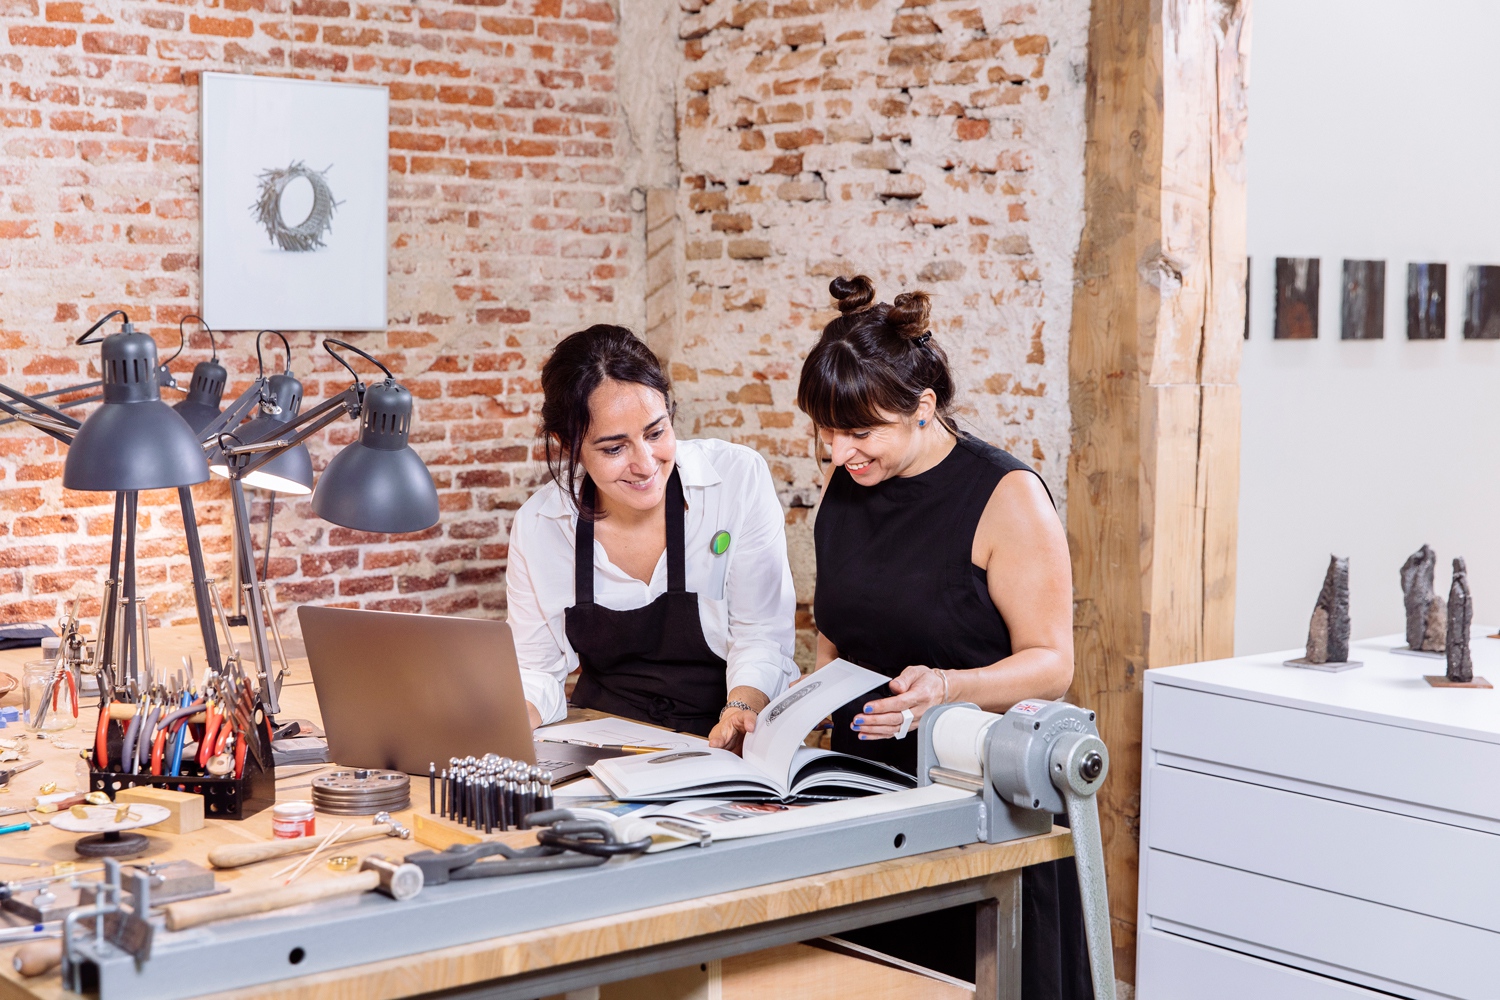 Dvojica žien v dielni na výrobu šperkov si spoločne prezerá príručku a notebook. Sedia pri pracovnom stole obloženom kladivkami, drôtmi, kliešťami a jasnými lampami namierenými k pracovným stolom.